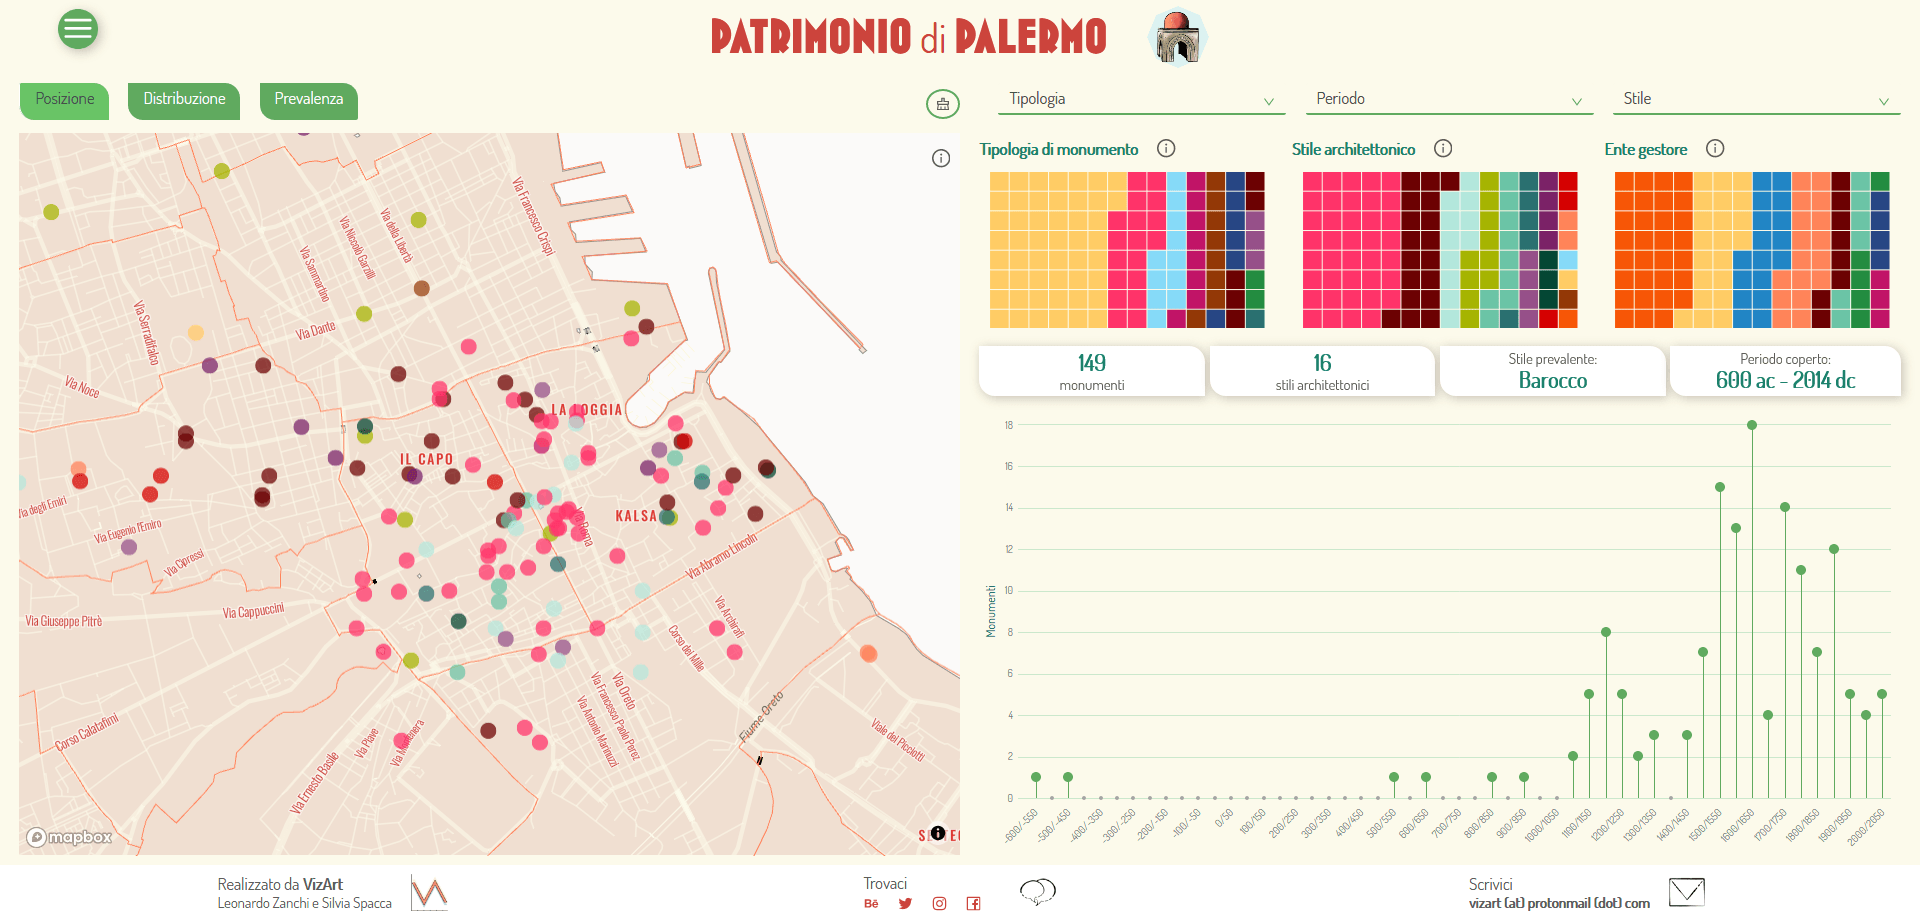 Uno sguardo sul Patrimonio Culturale di Palermo